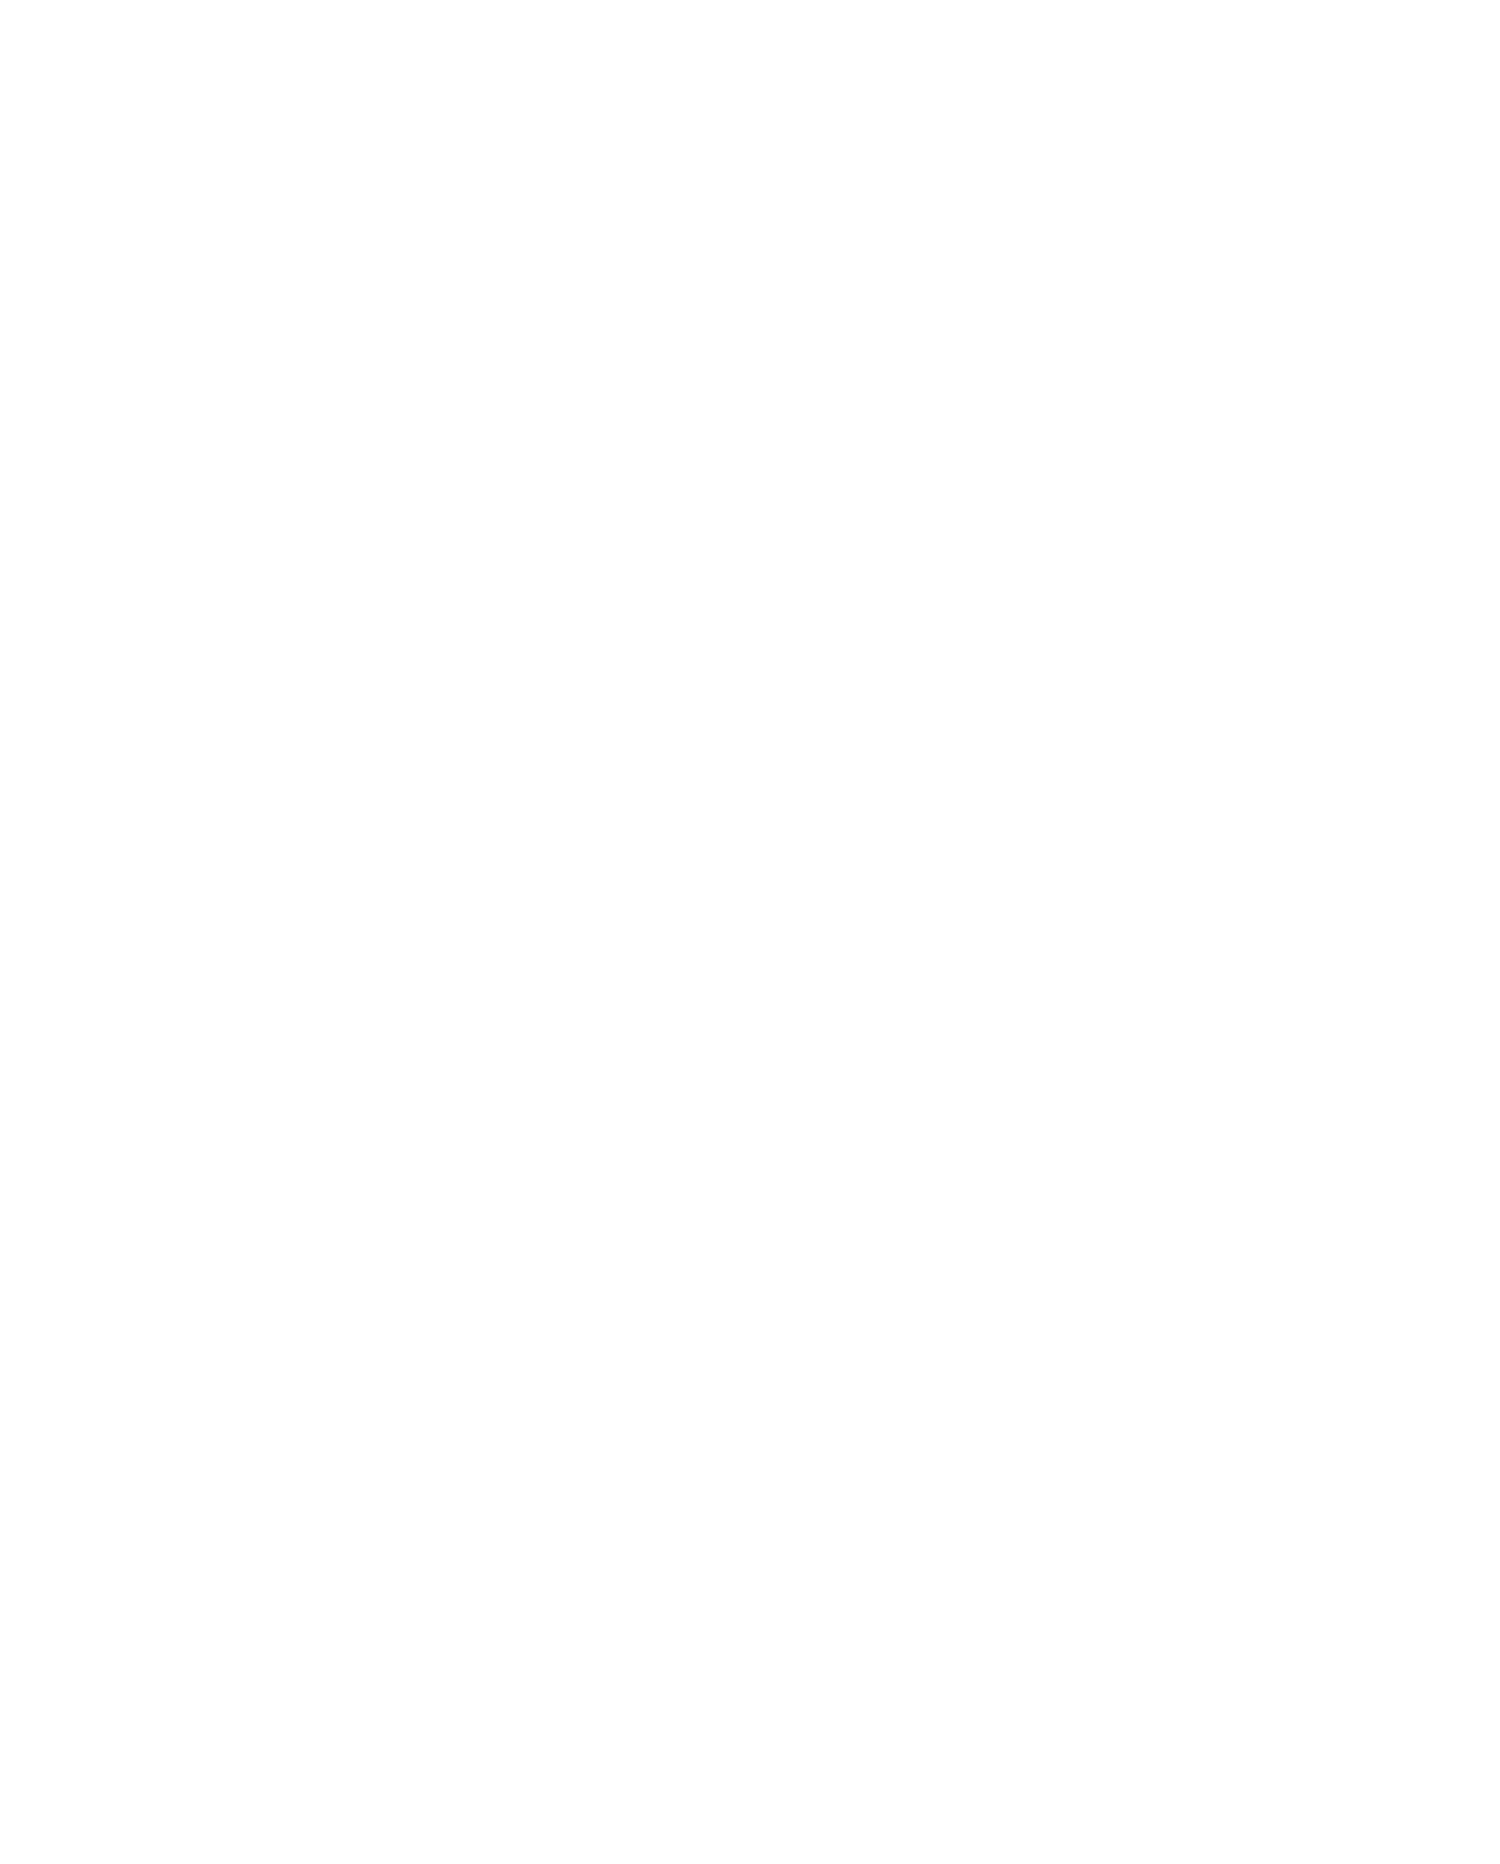 Twin Kitten Farm